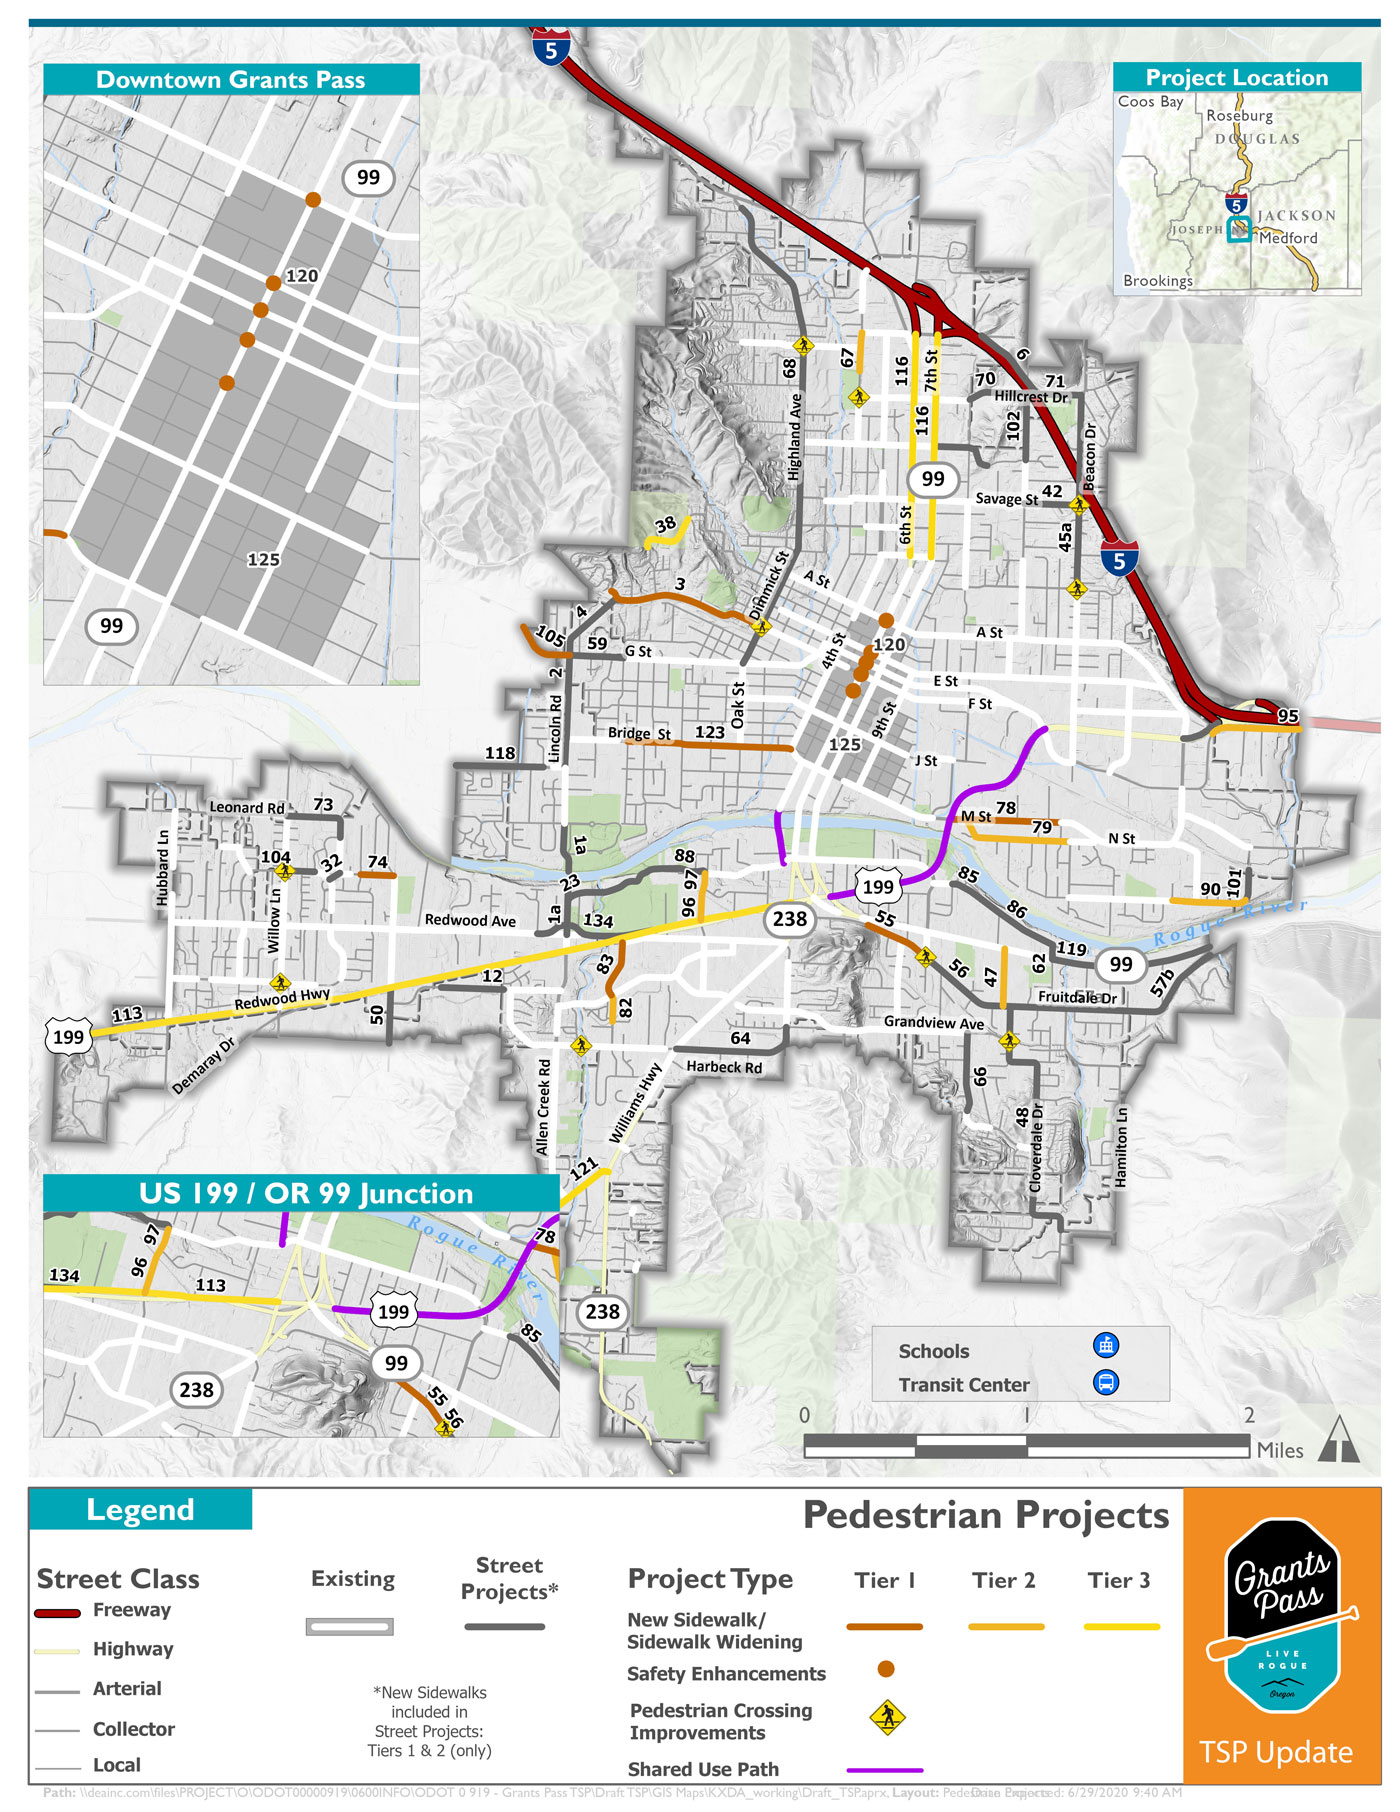 grants-pass-tsp/ooh3/map-pedestrian-projects